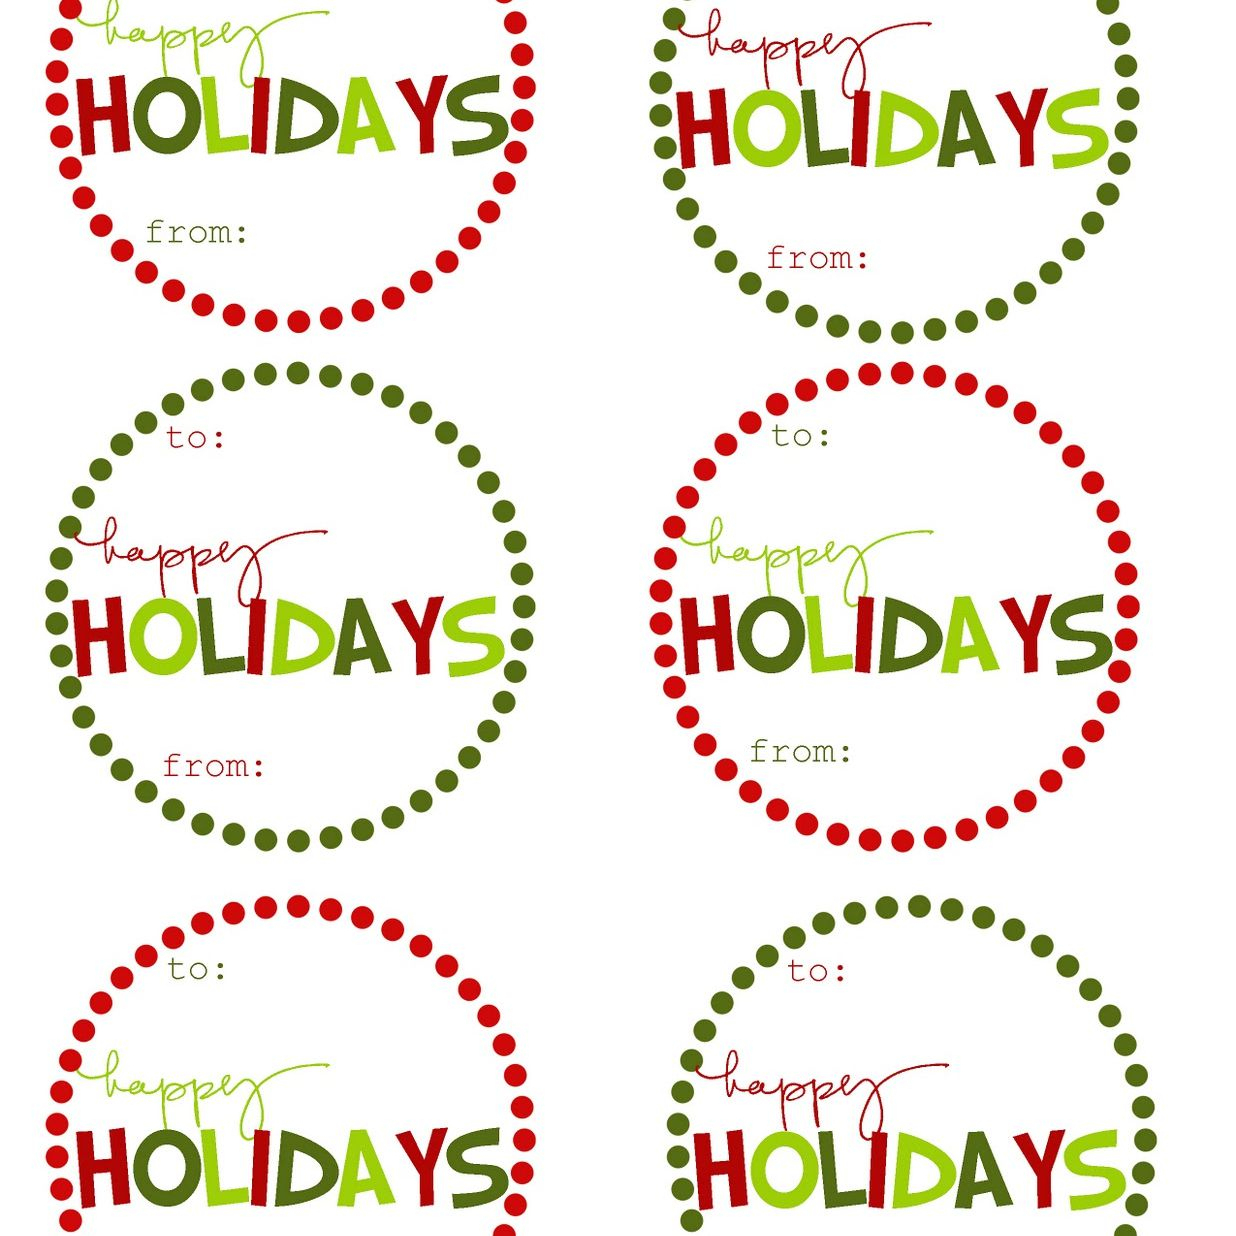 40 Sets Of Free Printable Christmas Gift Tags - Free Printable Christmas Pictures